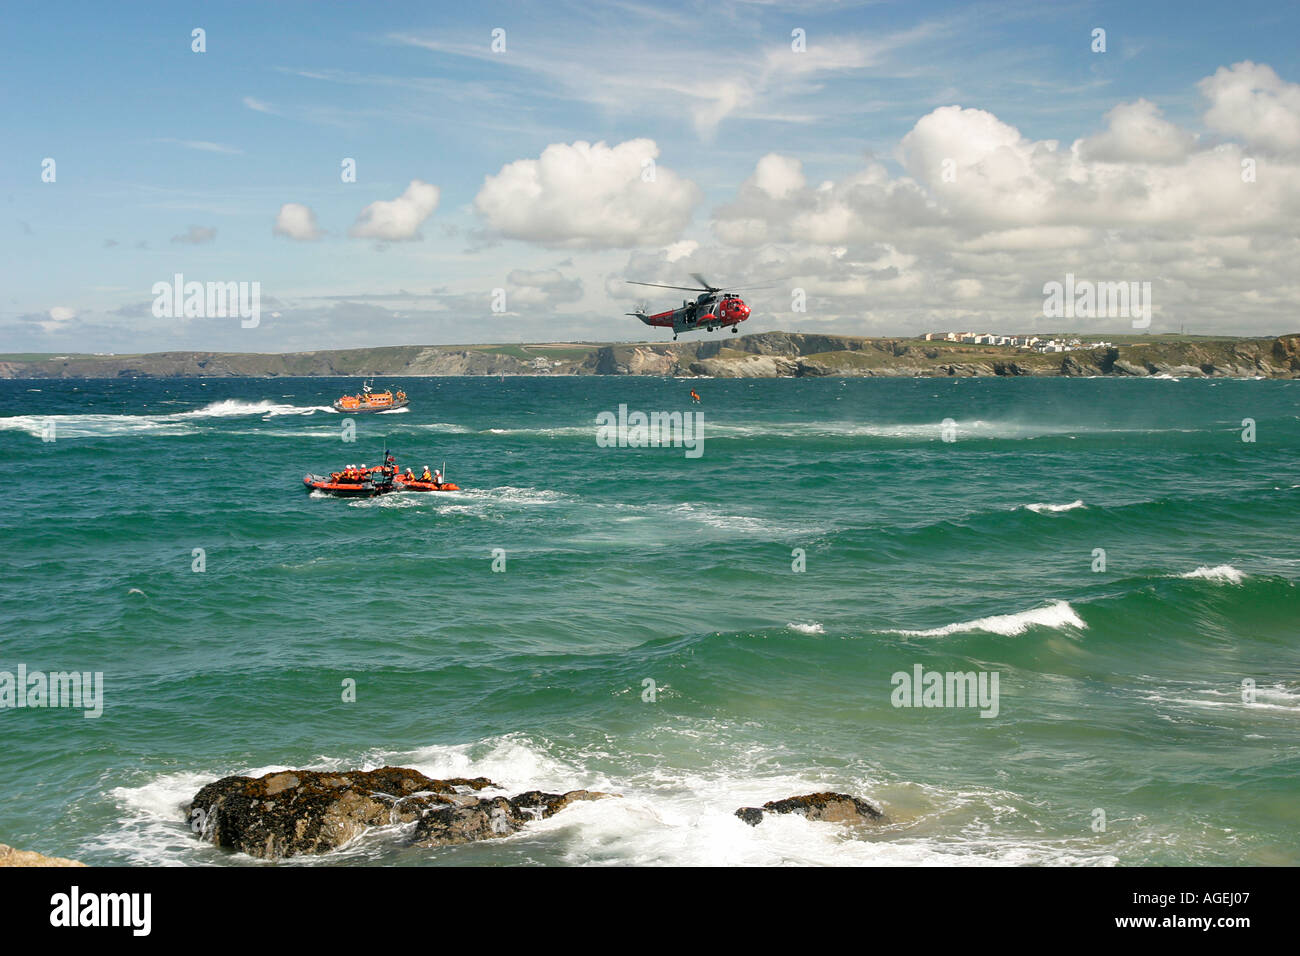 Helicóptero de rescate, mar, costa, Newquay, Cornwall. dos afloramientos rocosos, puente colgante, aire, emergencia, salvamento marítimo royal air forc Foto de stock